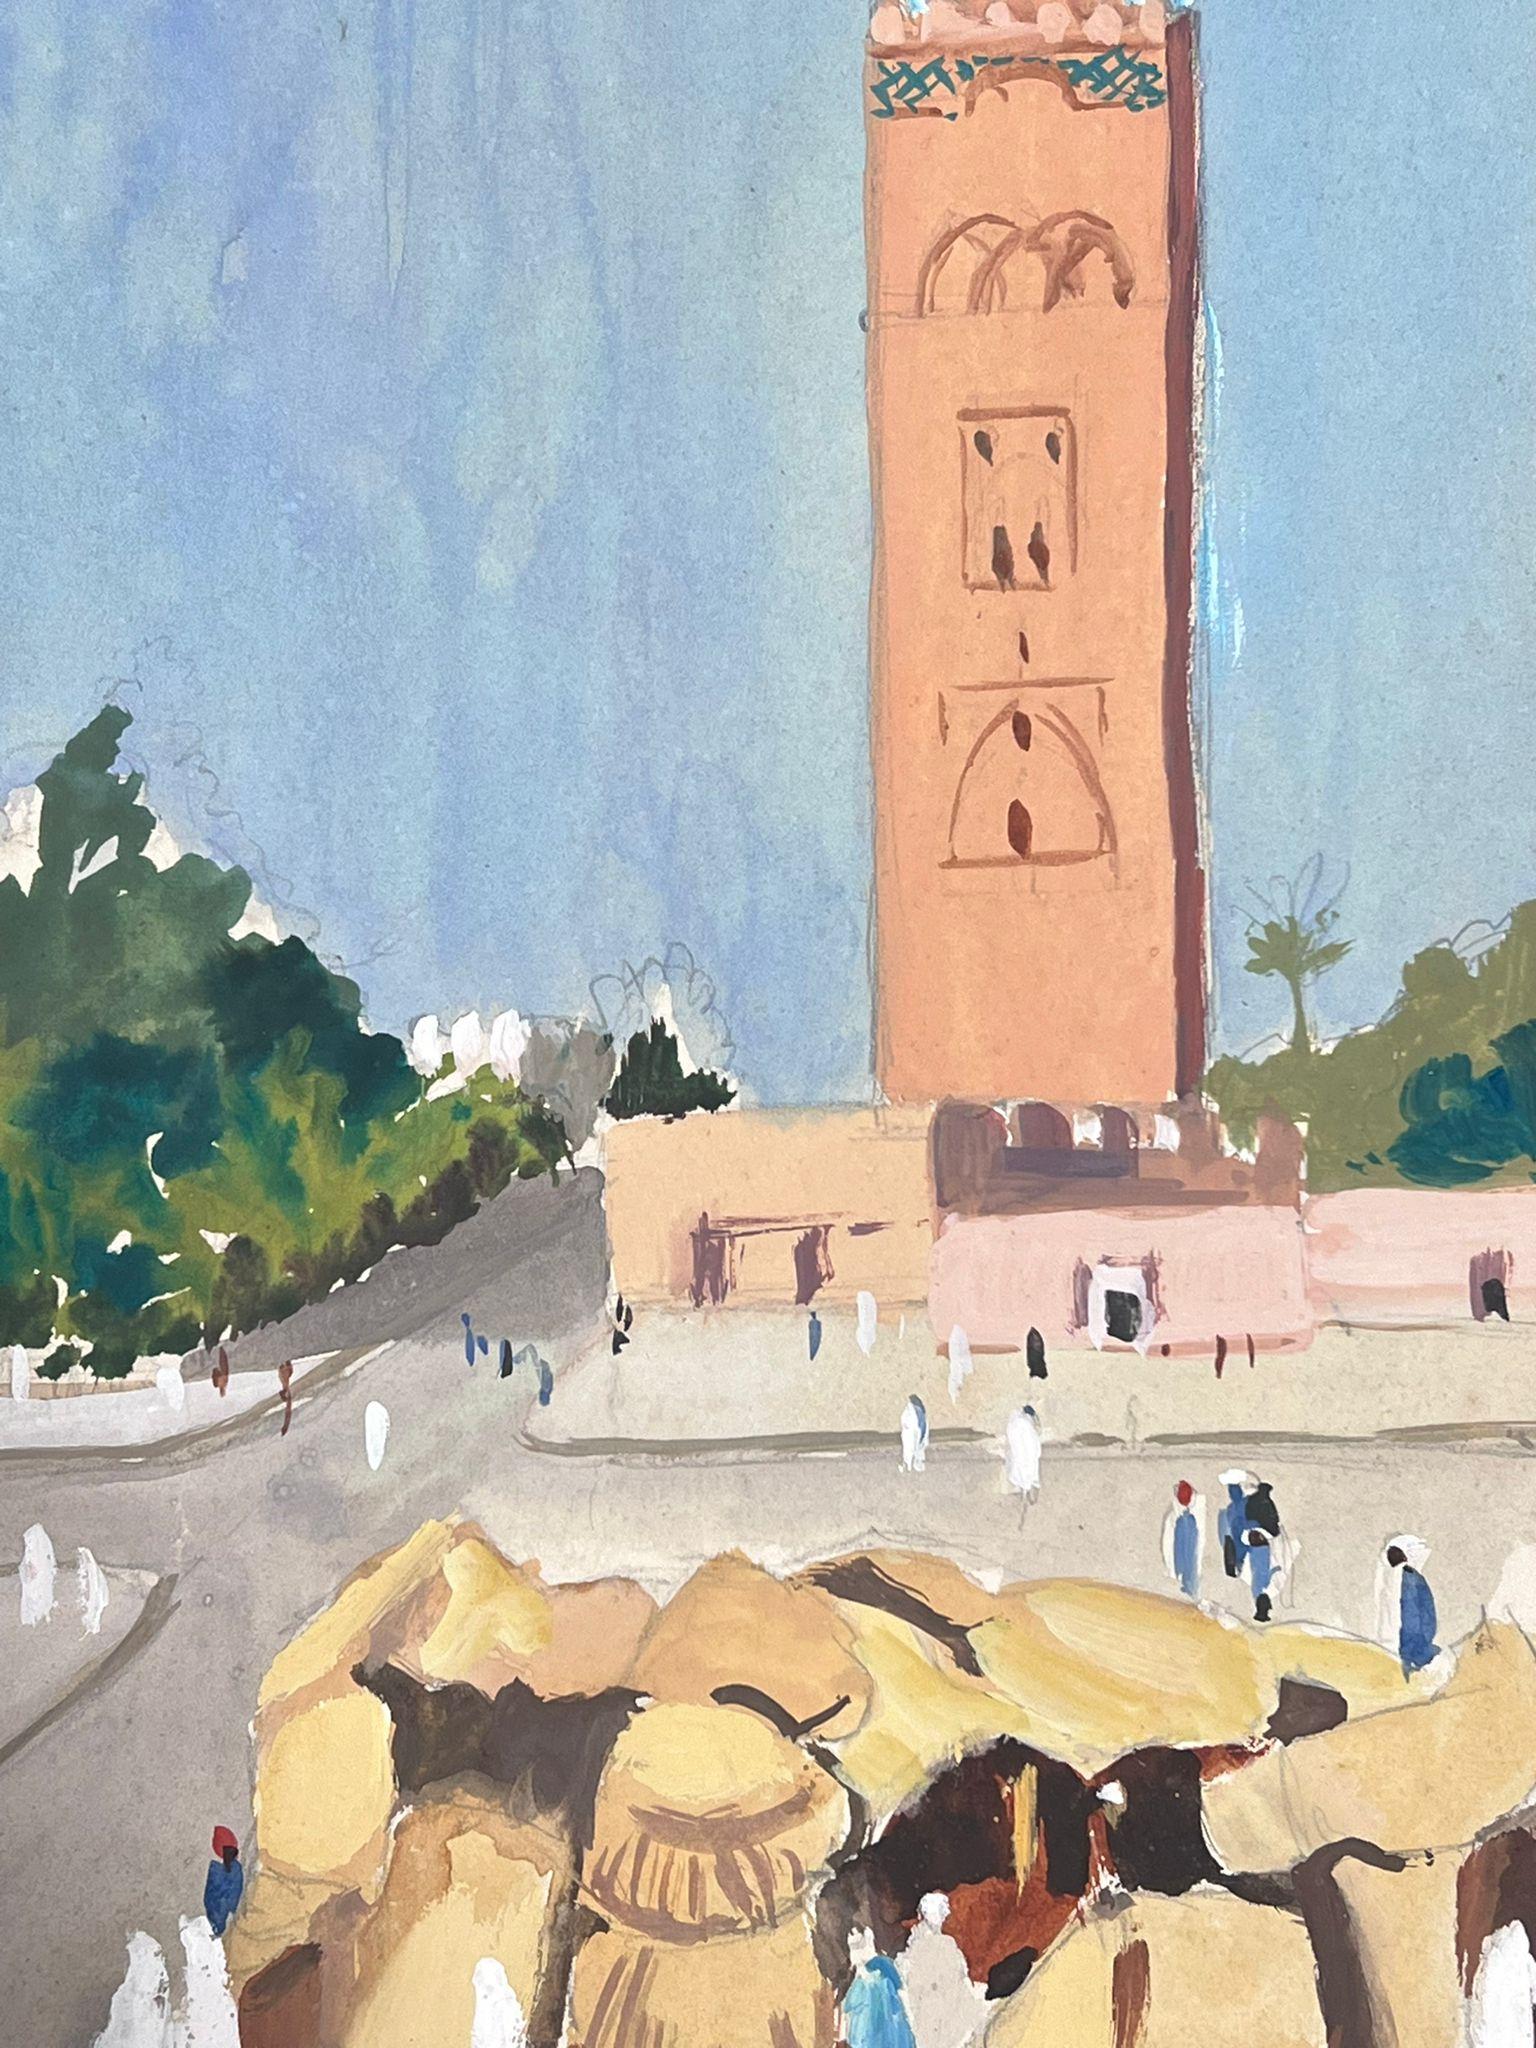 Grande tour à cloches orange impressionniste française des années 1930 dans une ville animée  - Painting de Louise Alix